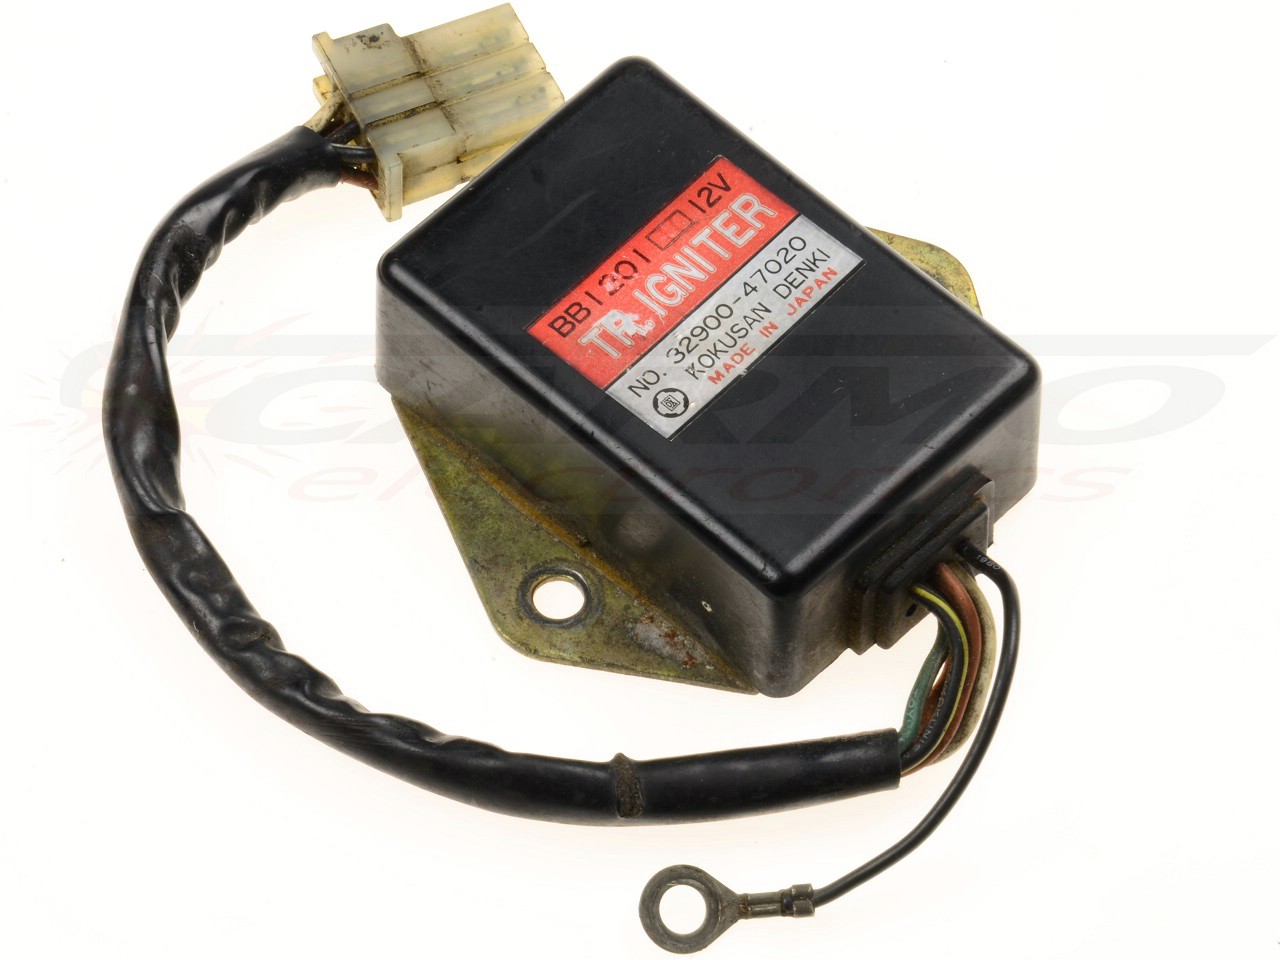 GS250 GS450 GS550 TCI CDI dispositif de commande boîte noire (BB1201, 32900-47020)